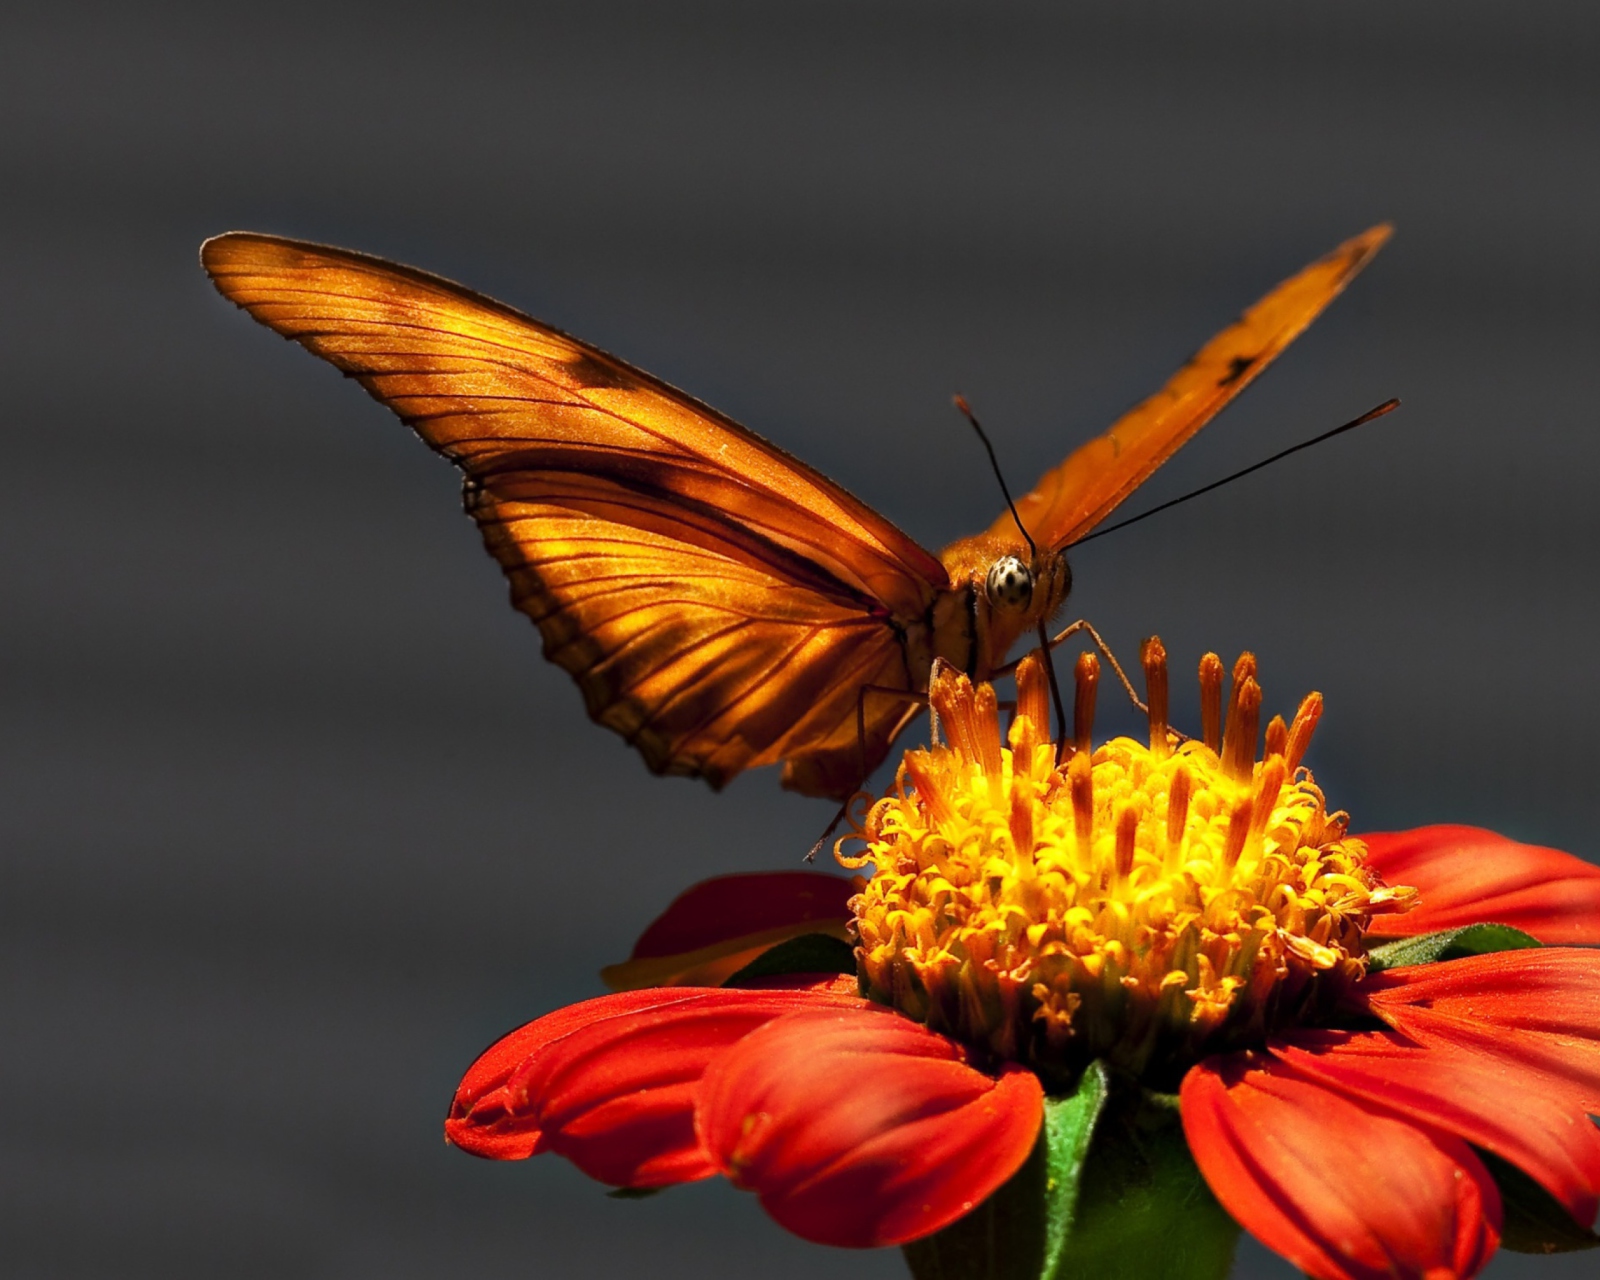 Butterfly On Flower wallpaper 1600x1280